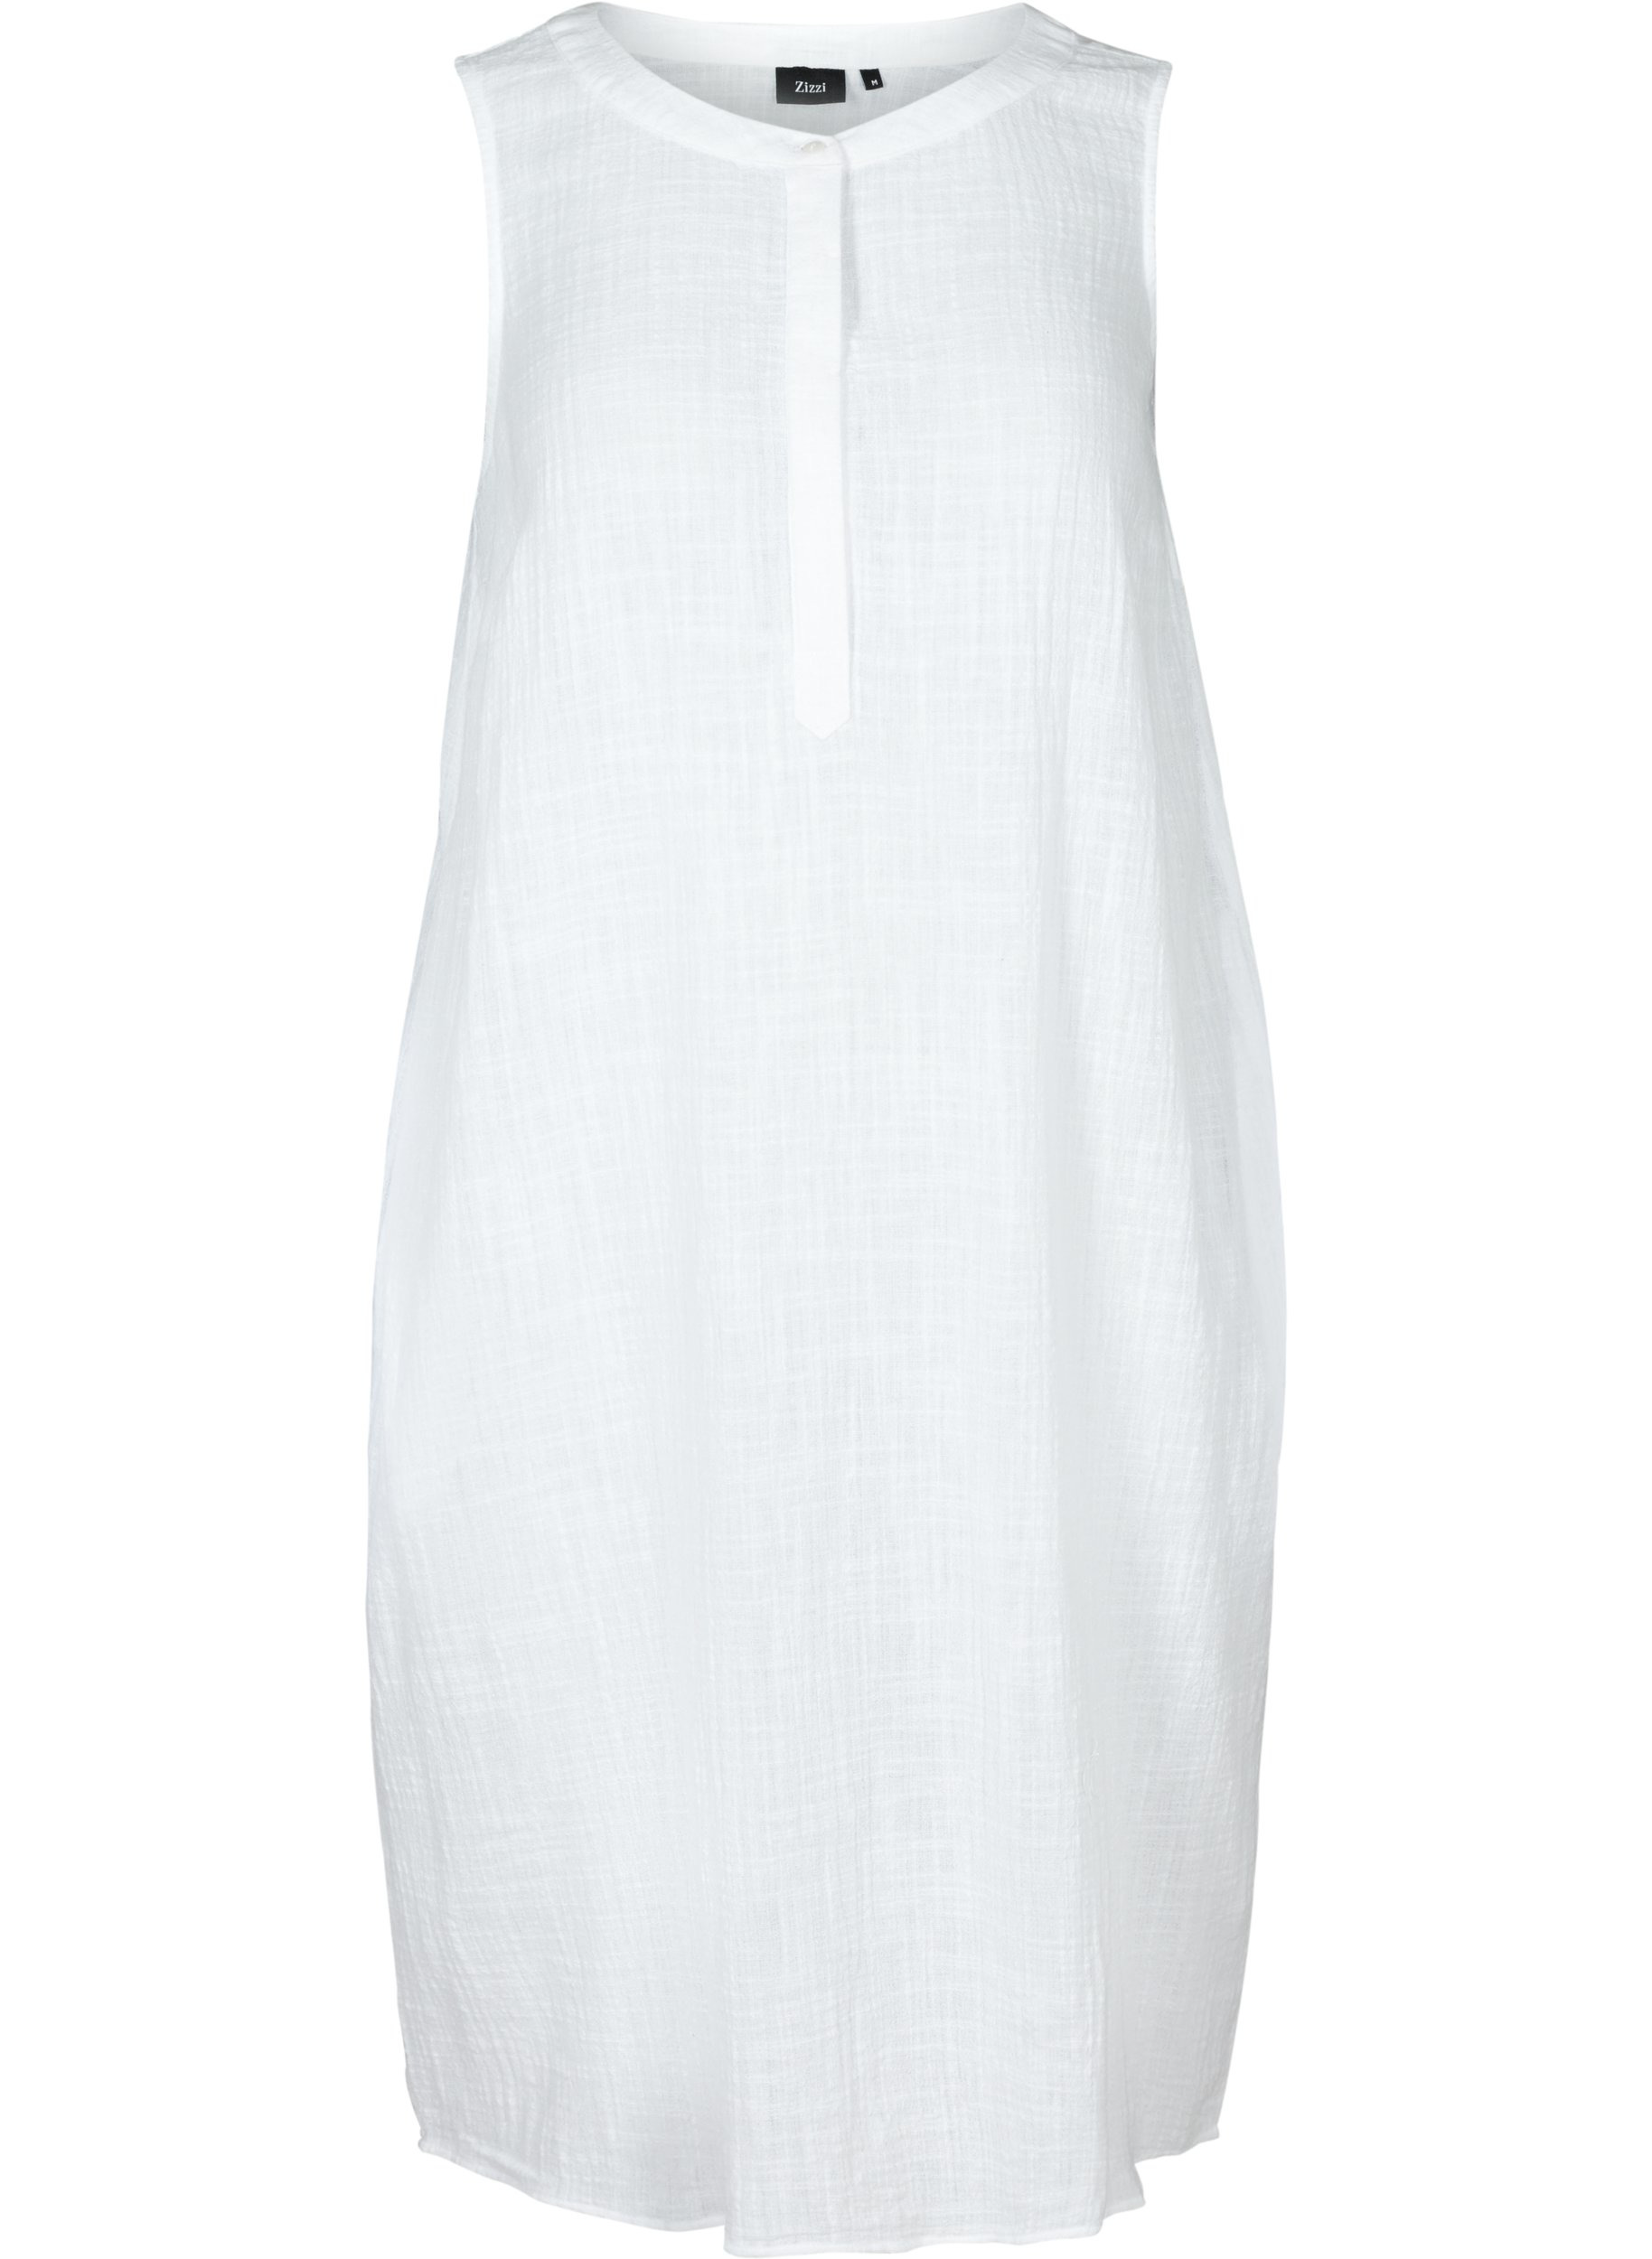 Mouwloze jurk in katoen, White